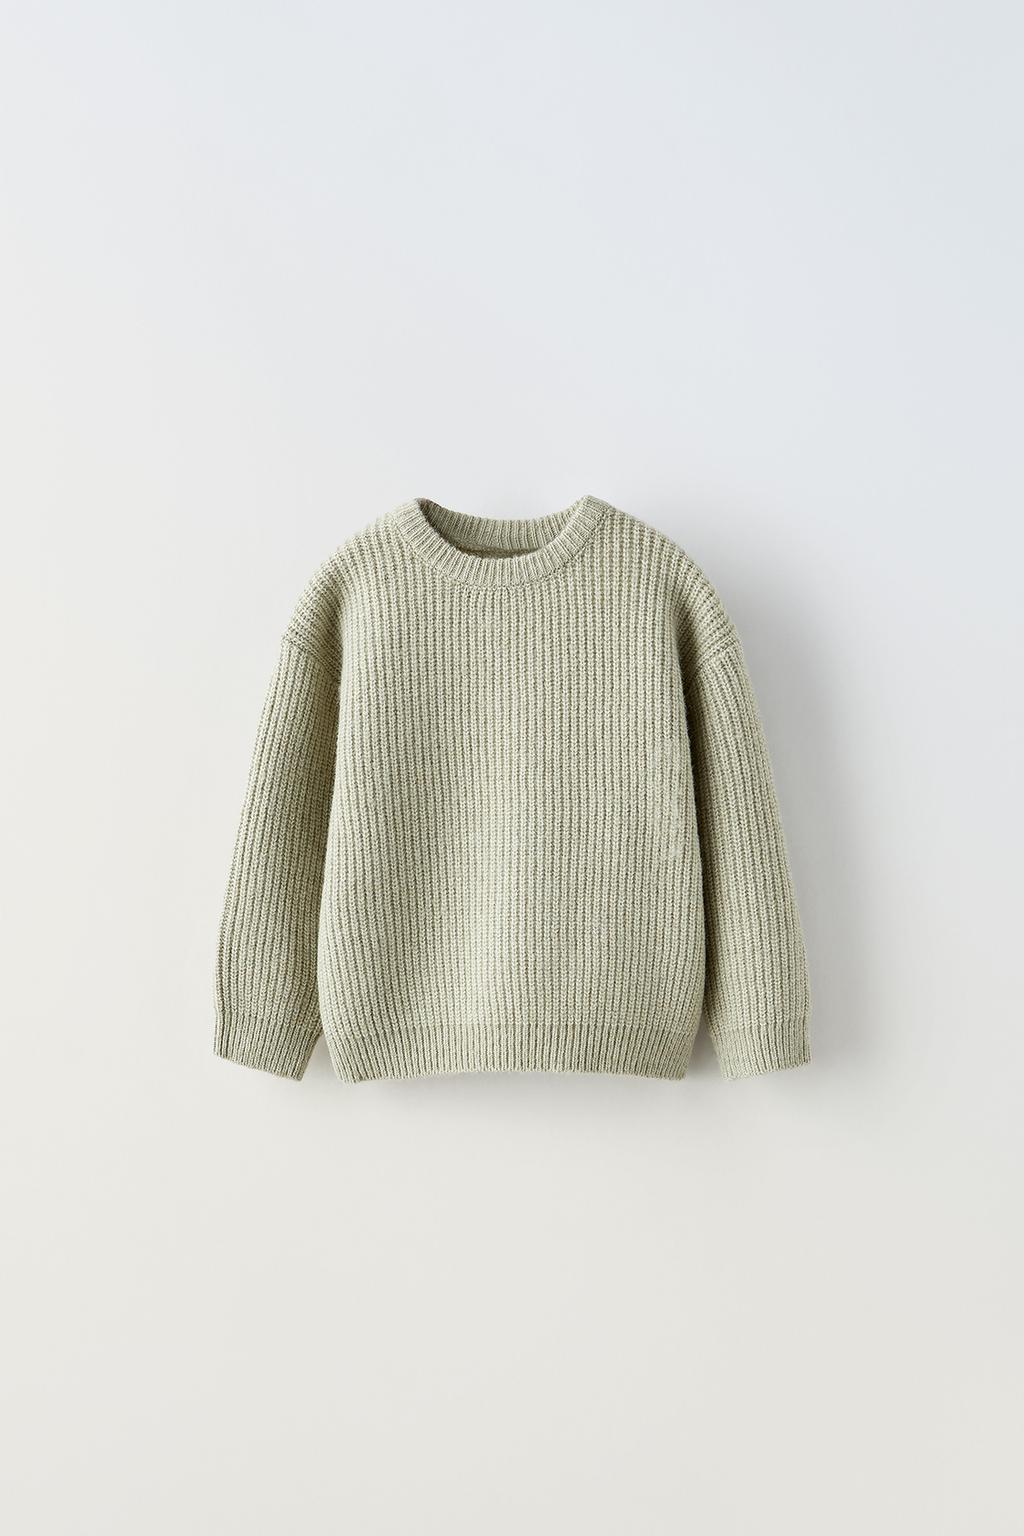 Базовый трикотажный свитер ZARA, зеленый мергель свитер мужской с круглым вырезом повседневный приталенный пуловер с длинными рукавами теплый вязаный свитер зима